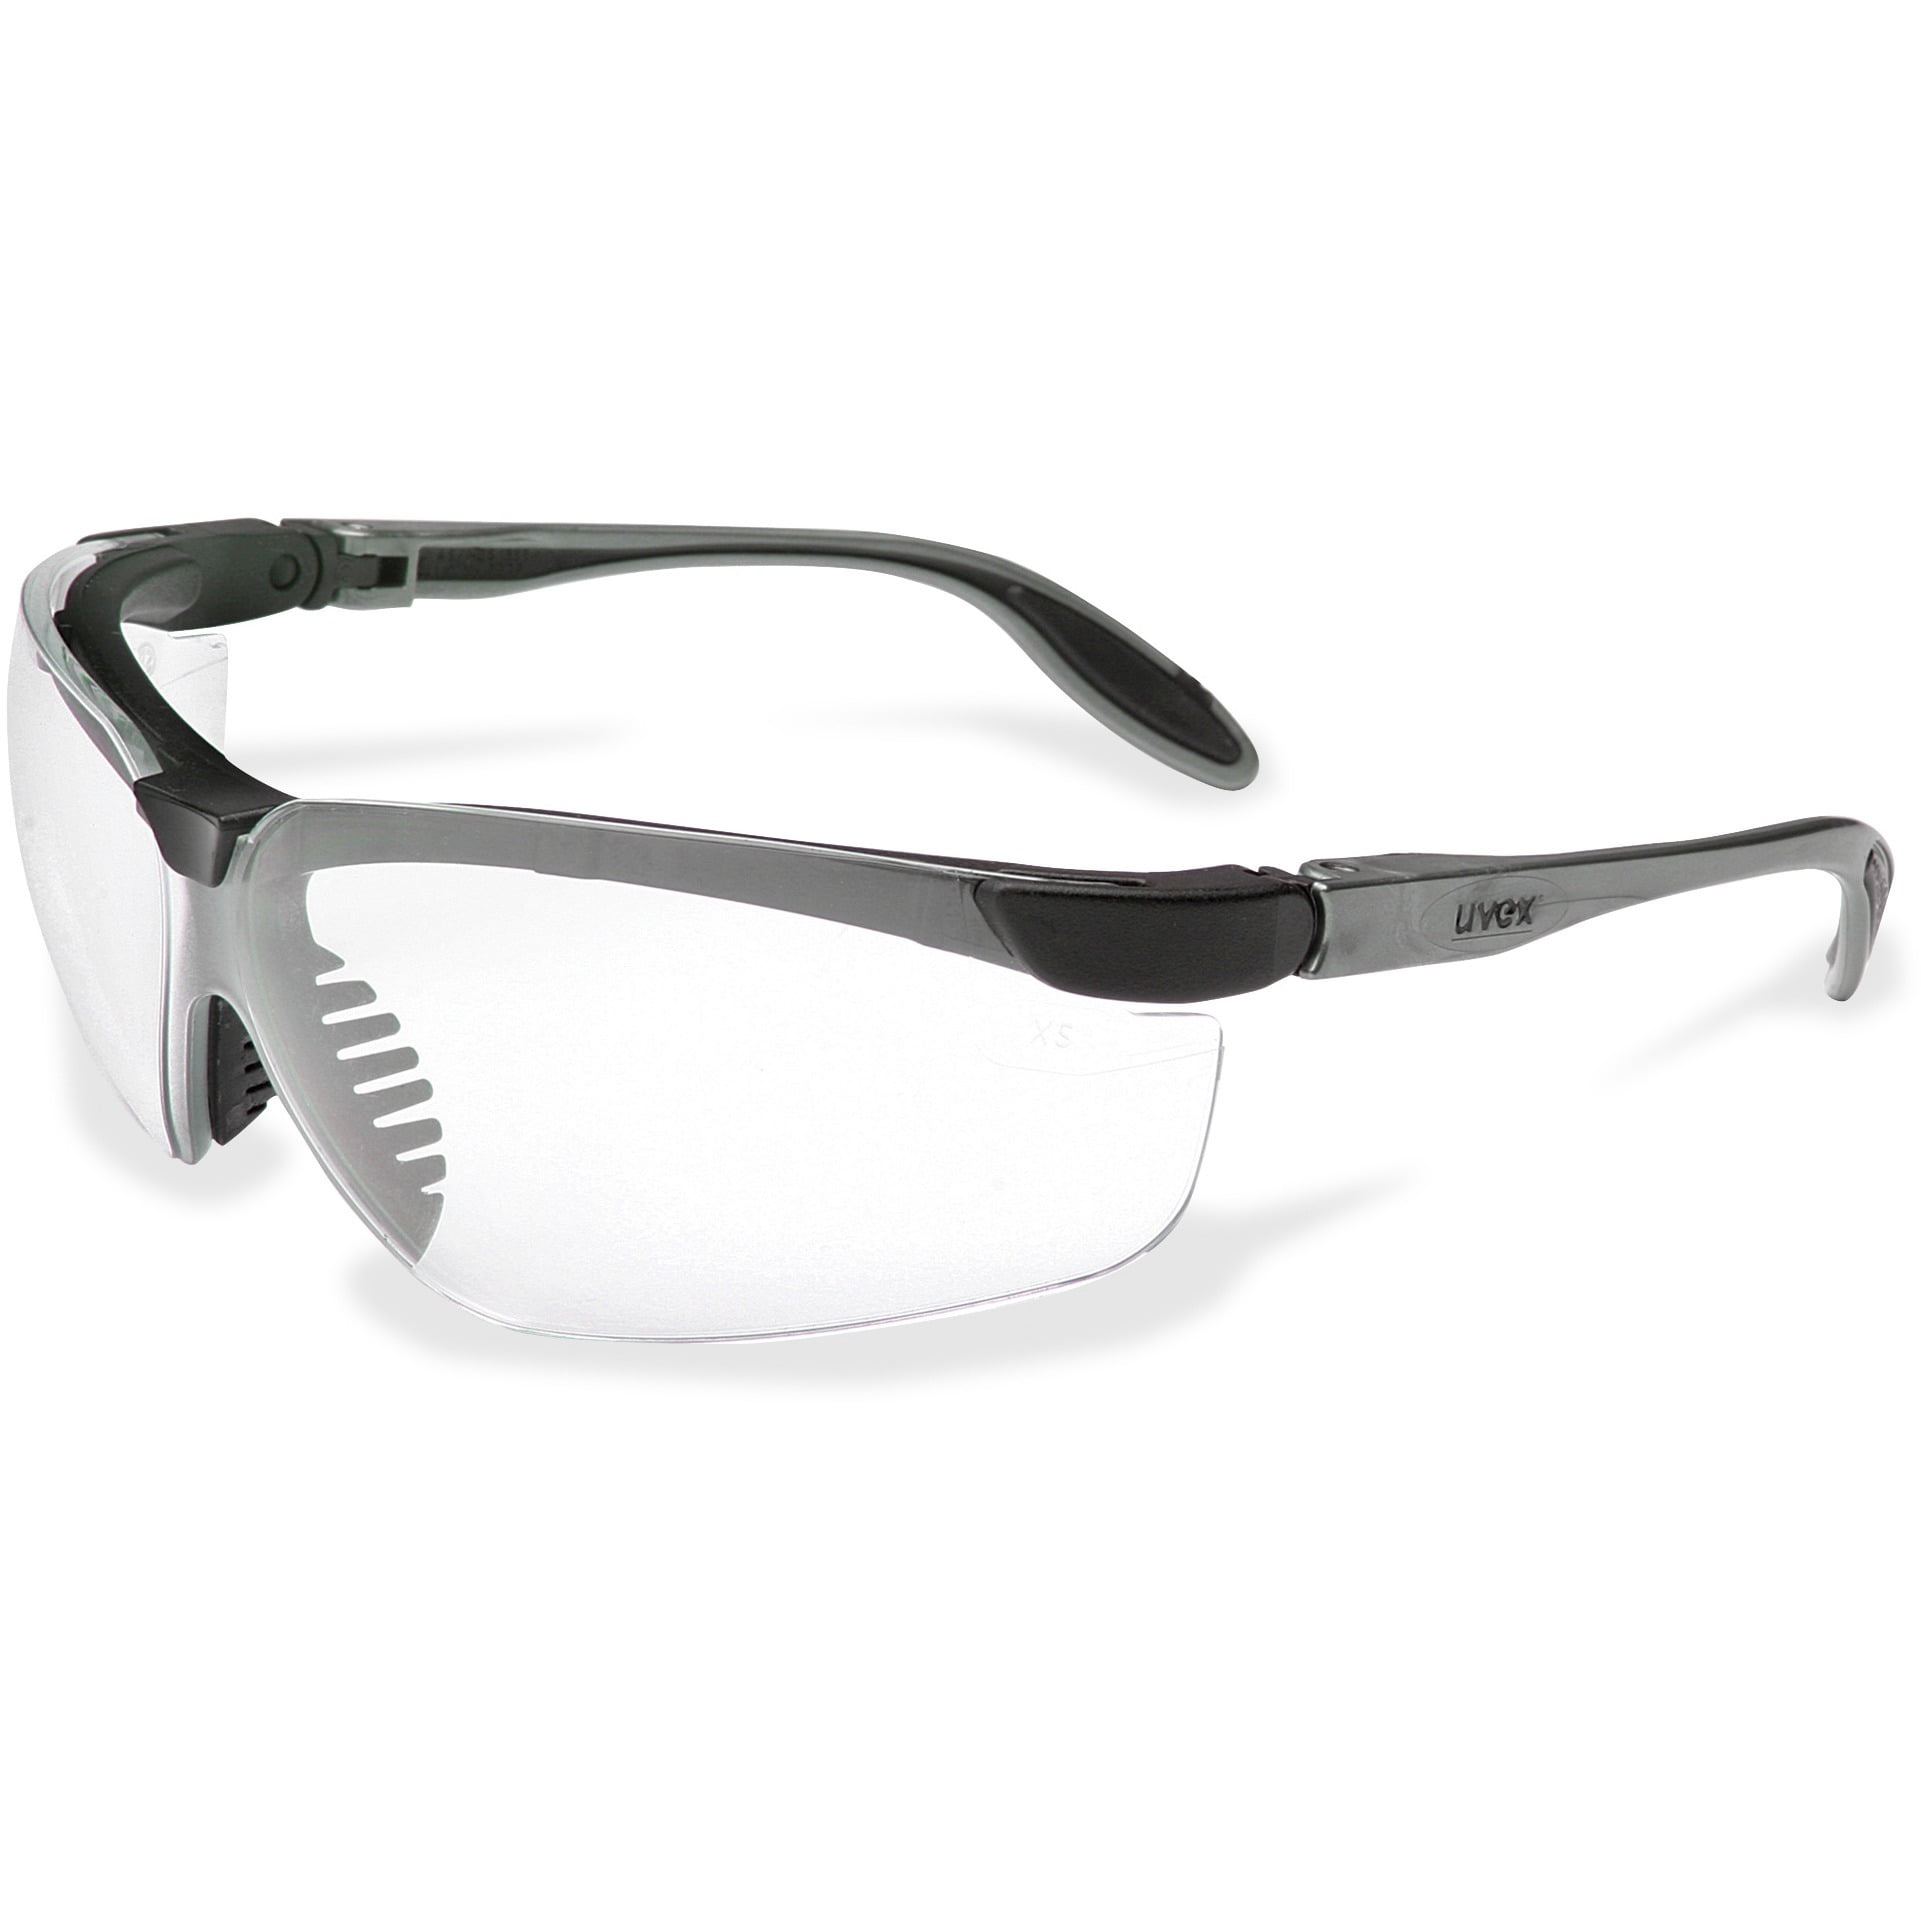 Uvex A950 Safety Glasses +1.50 Bi-focal Readers Sporty Black Frame, 